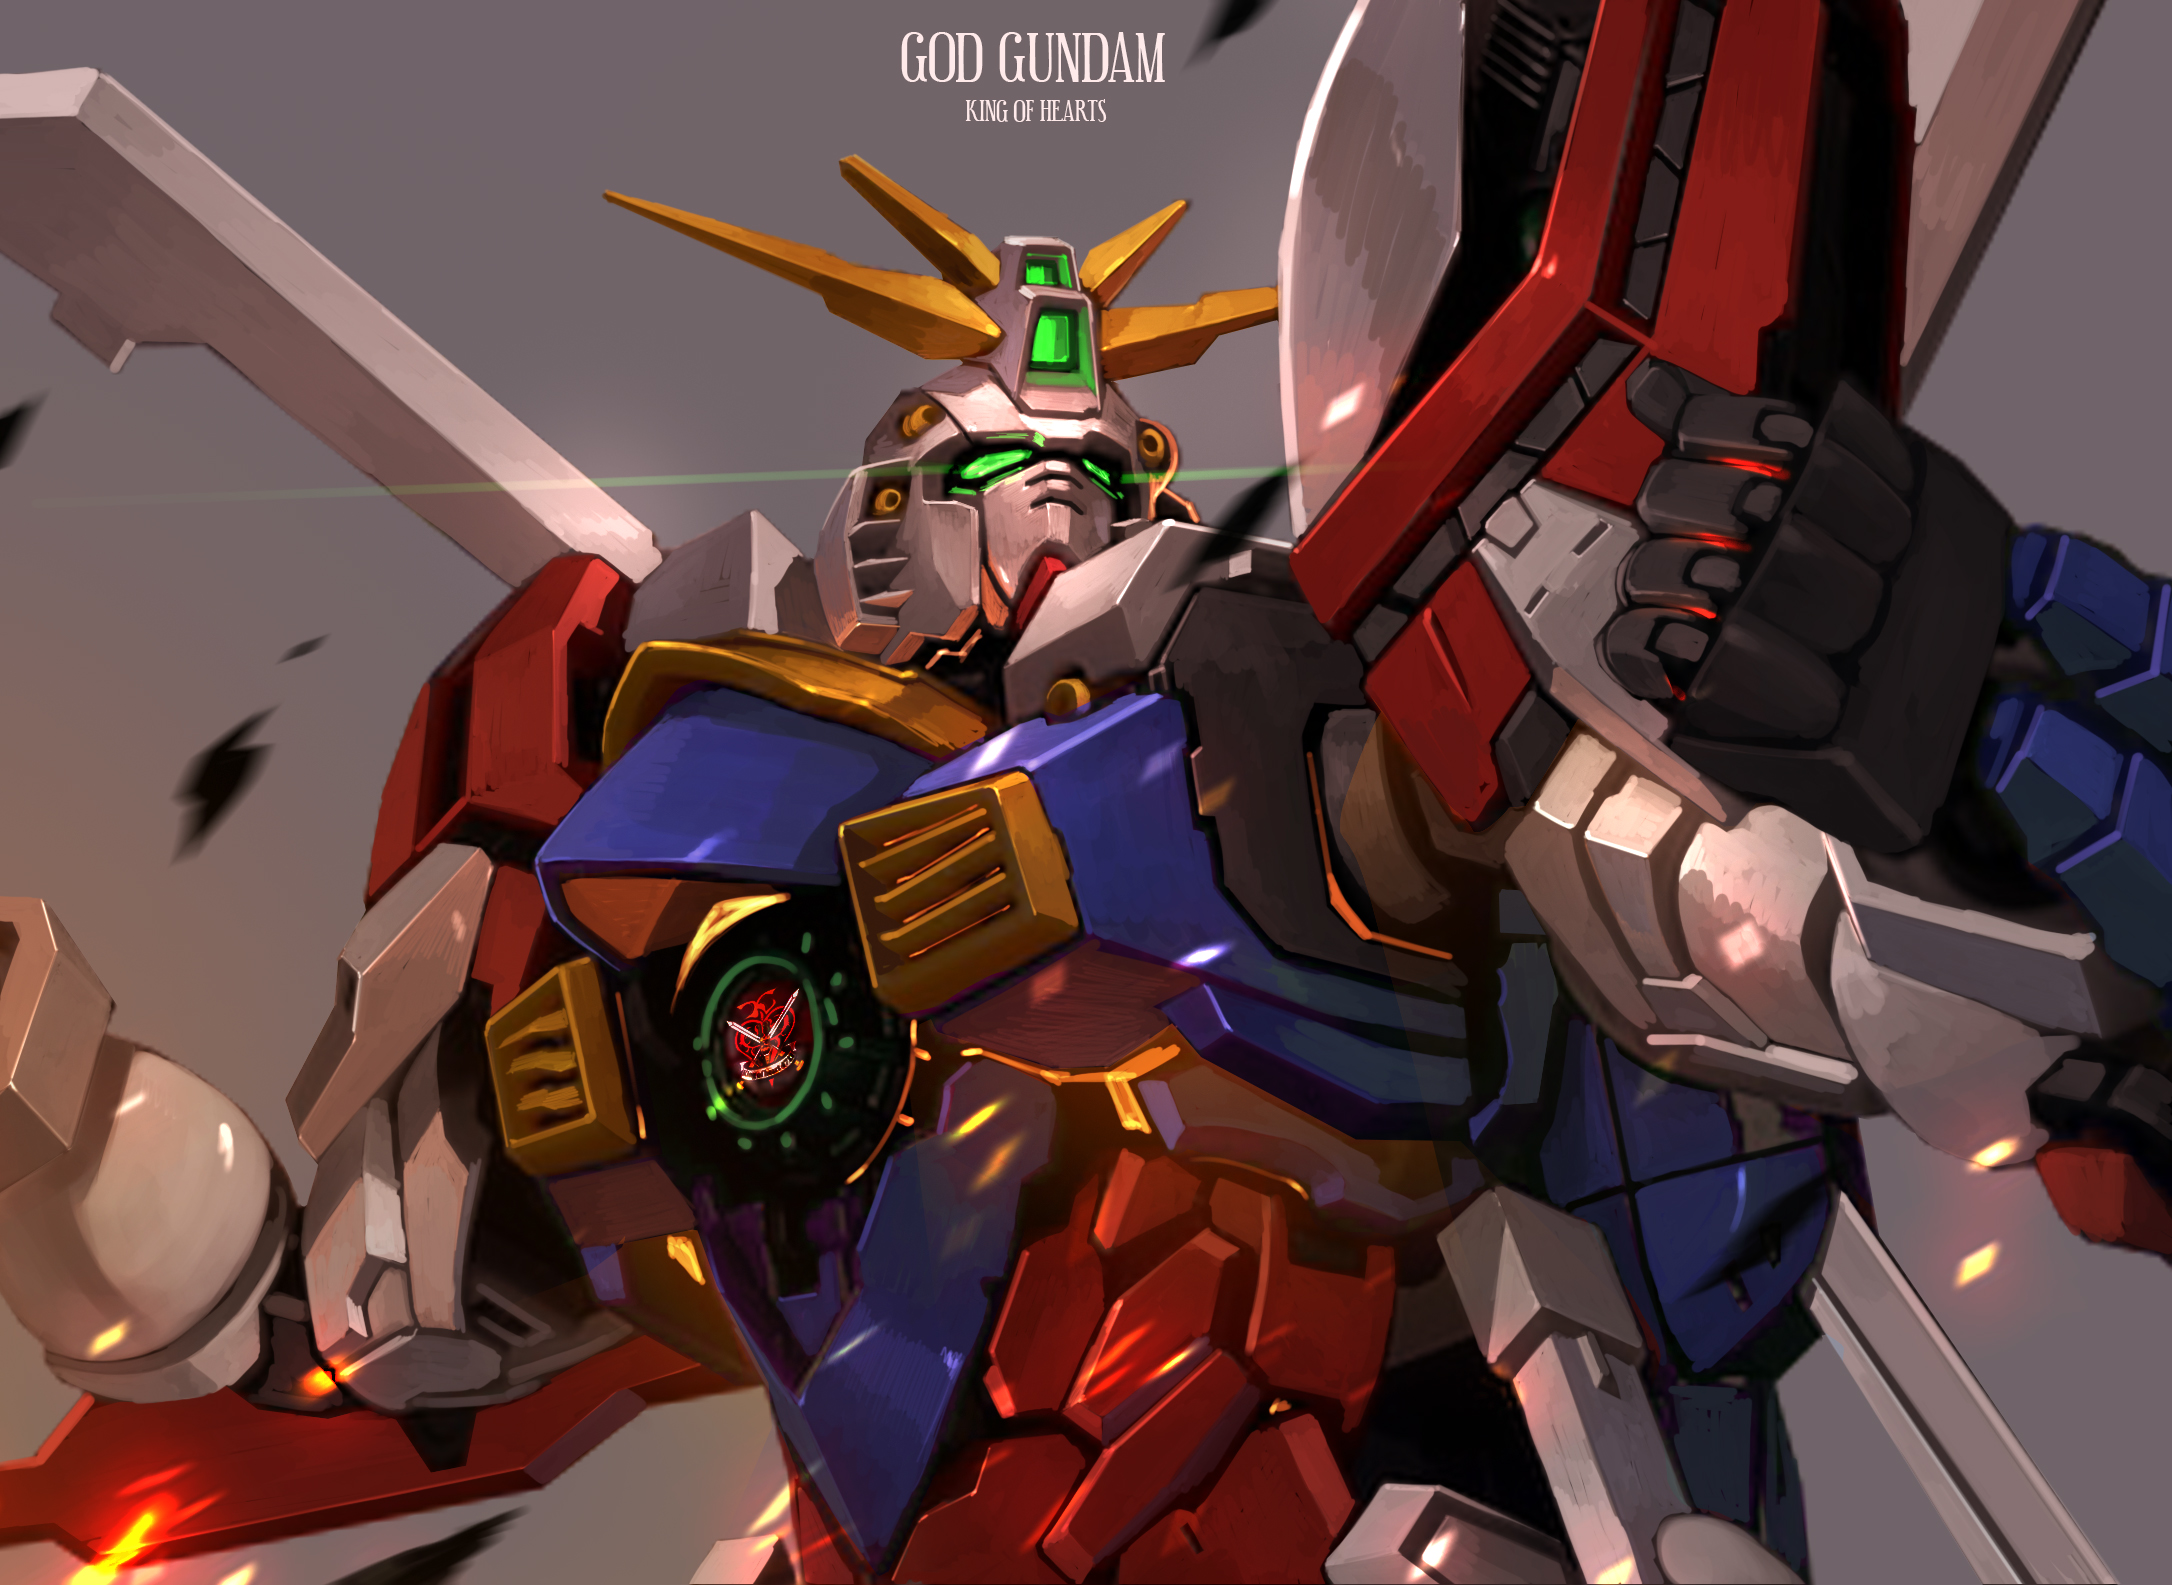 Anime Mechs Gundam Super Robot Taisen God Gundam Mobile Fighter G Gundam Artwork Digital Art Fan Art 2172x1585